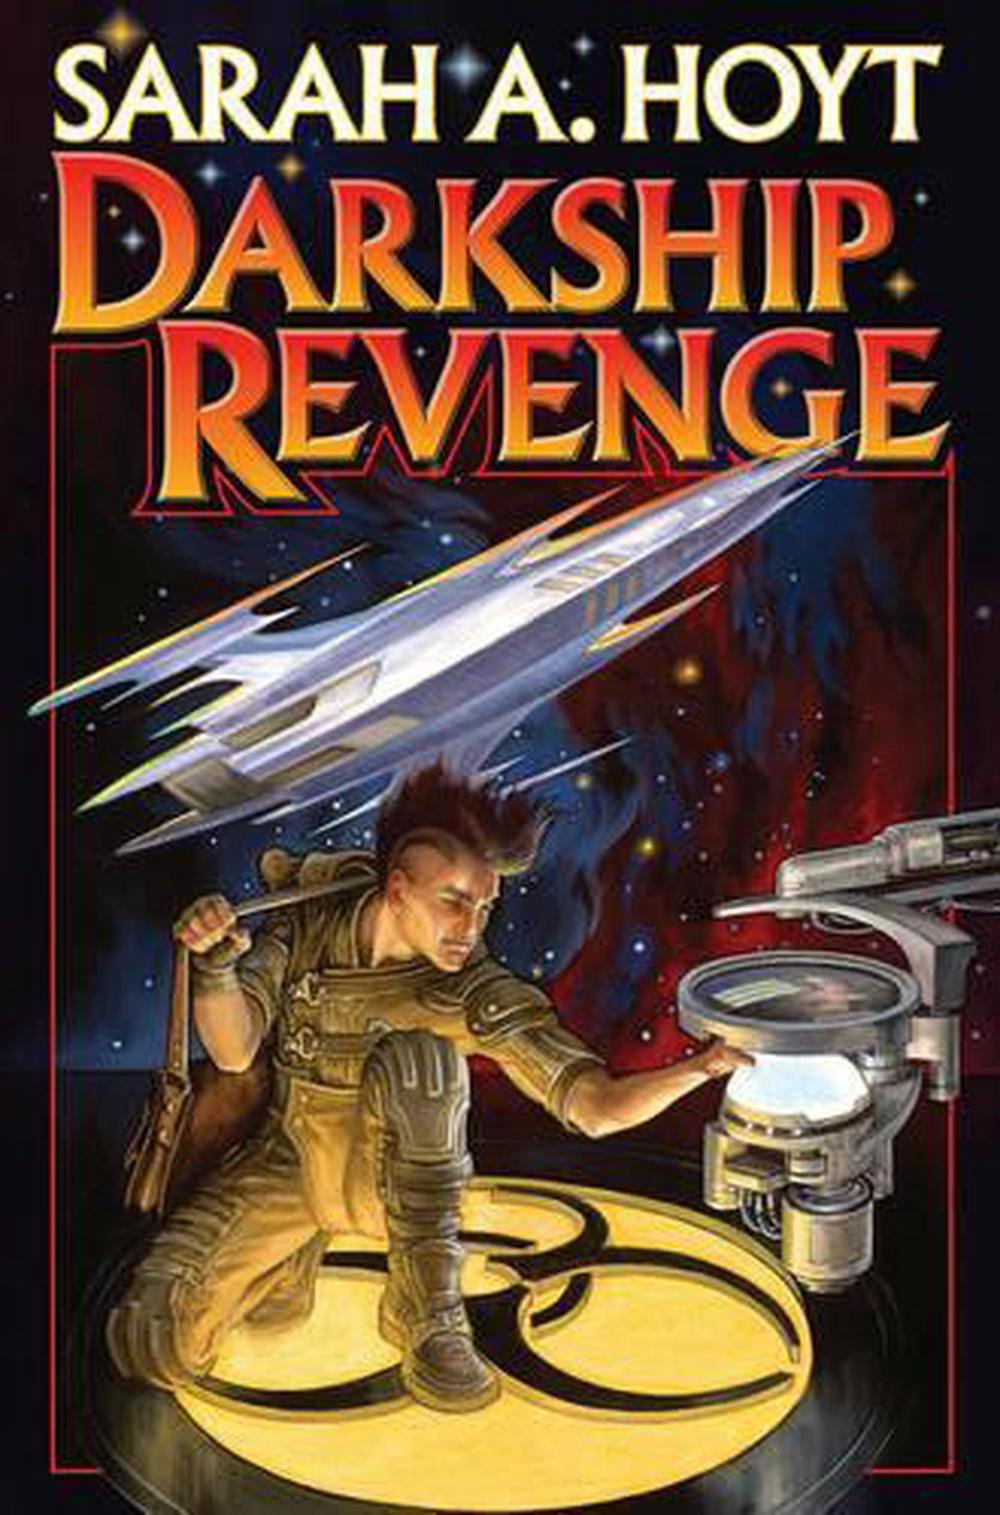 DarkShip Thieves by Sarah A. Hoyt